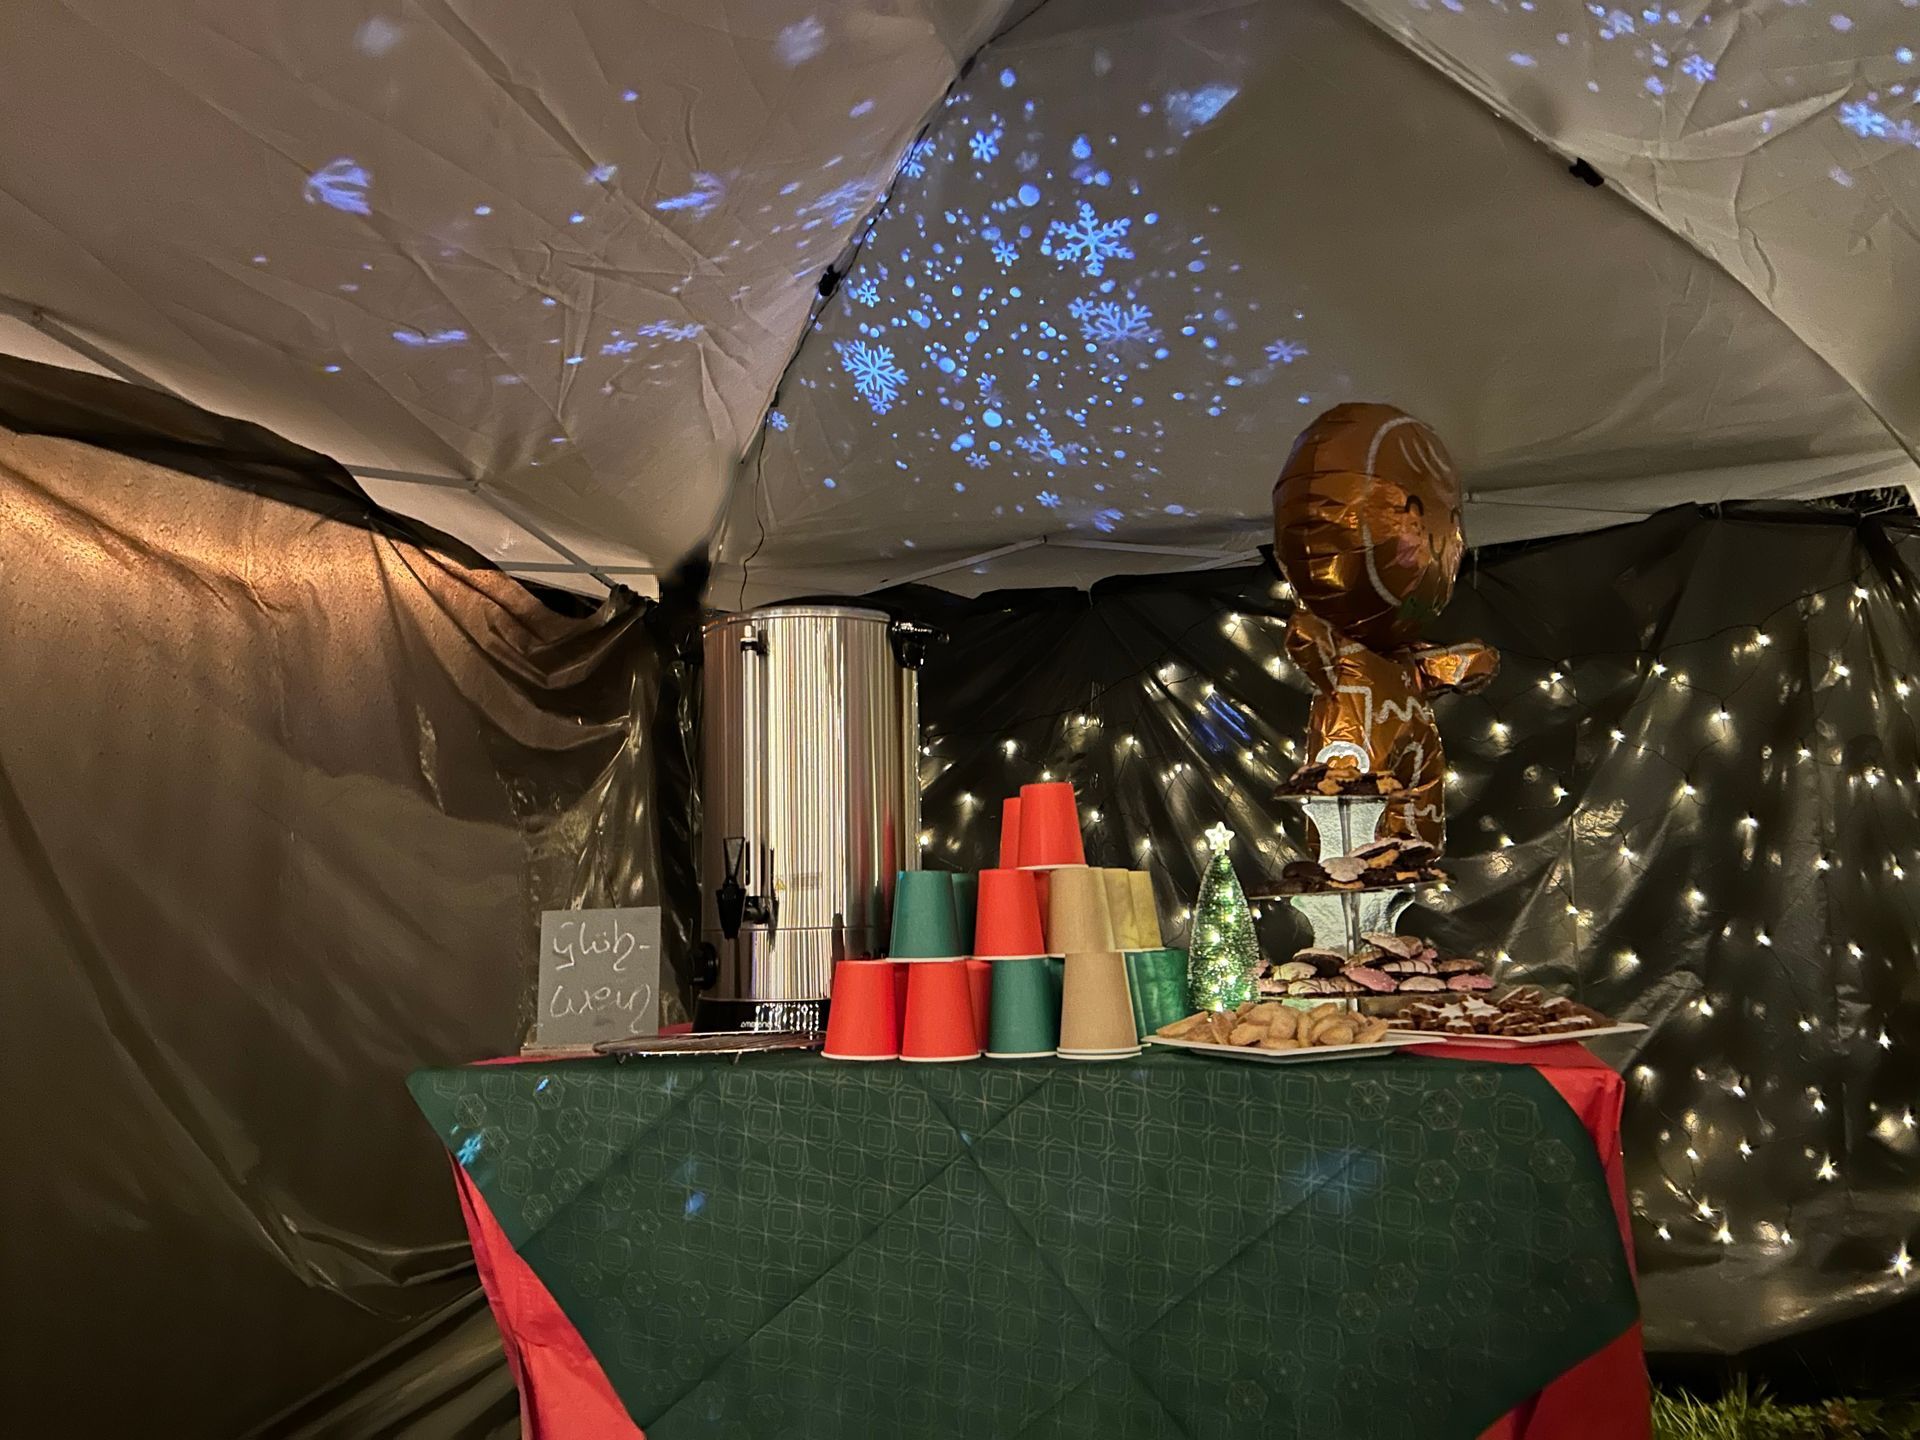 Ein großer Wärmebehälter mit Glühwein steht auf dem Tisch im Zelt. Ein Projektor wirft weiße Sterne an den Himmel des Zeltes.